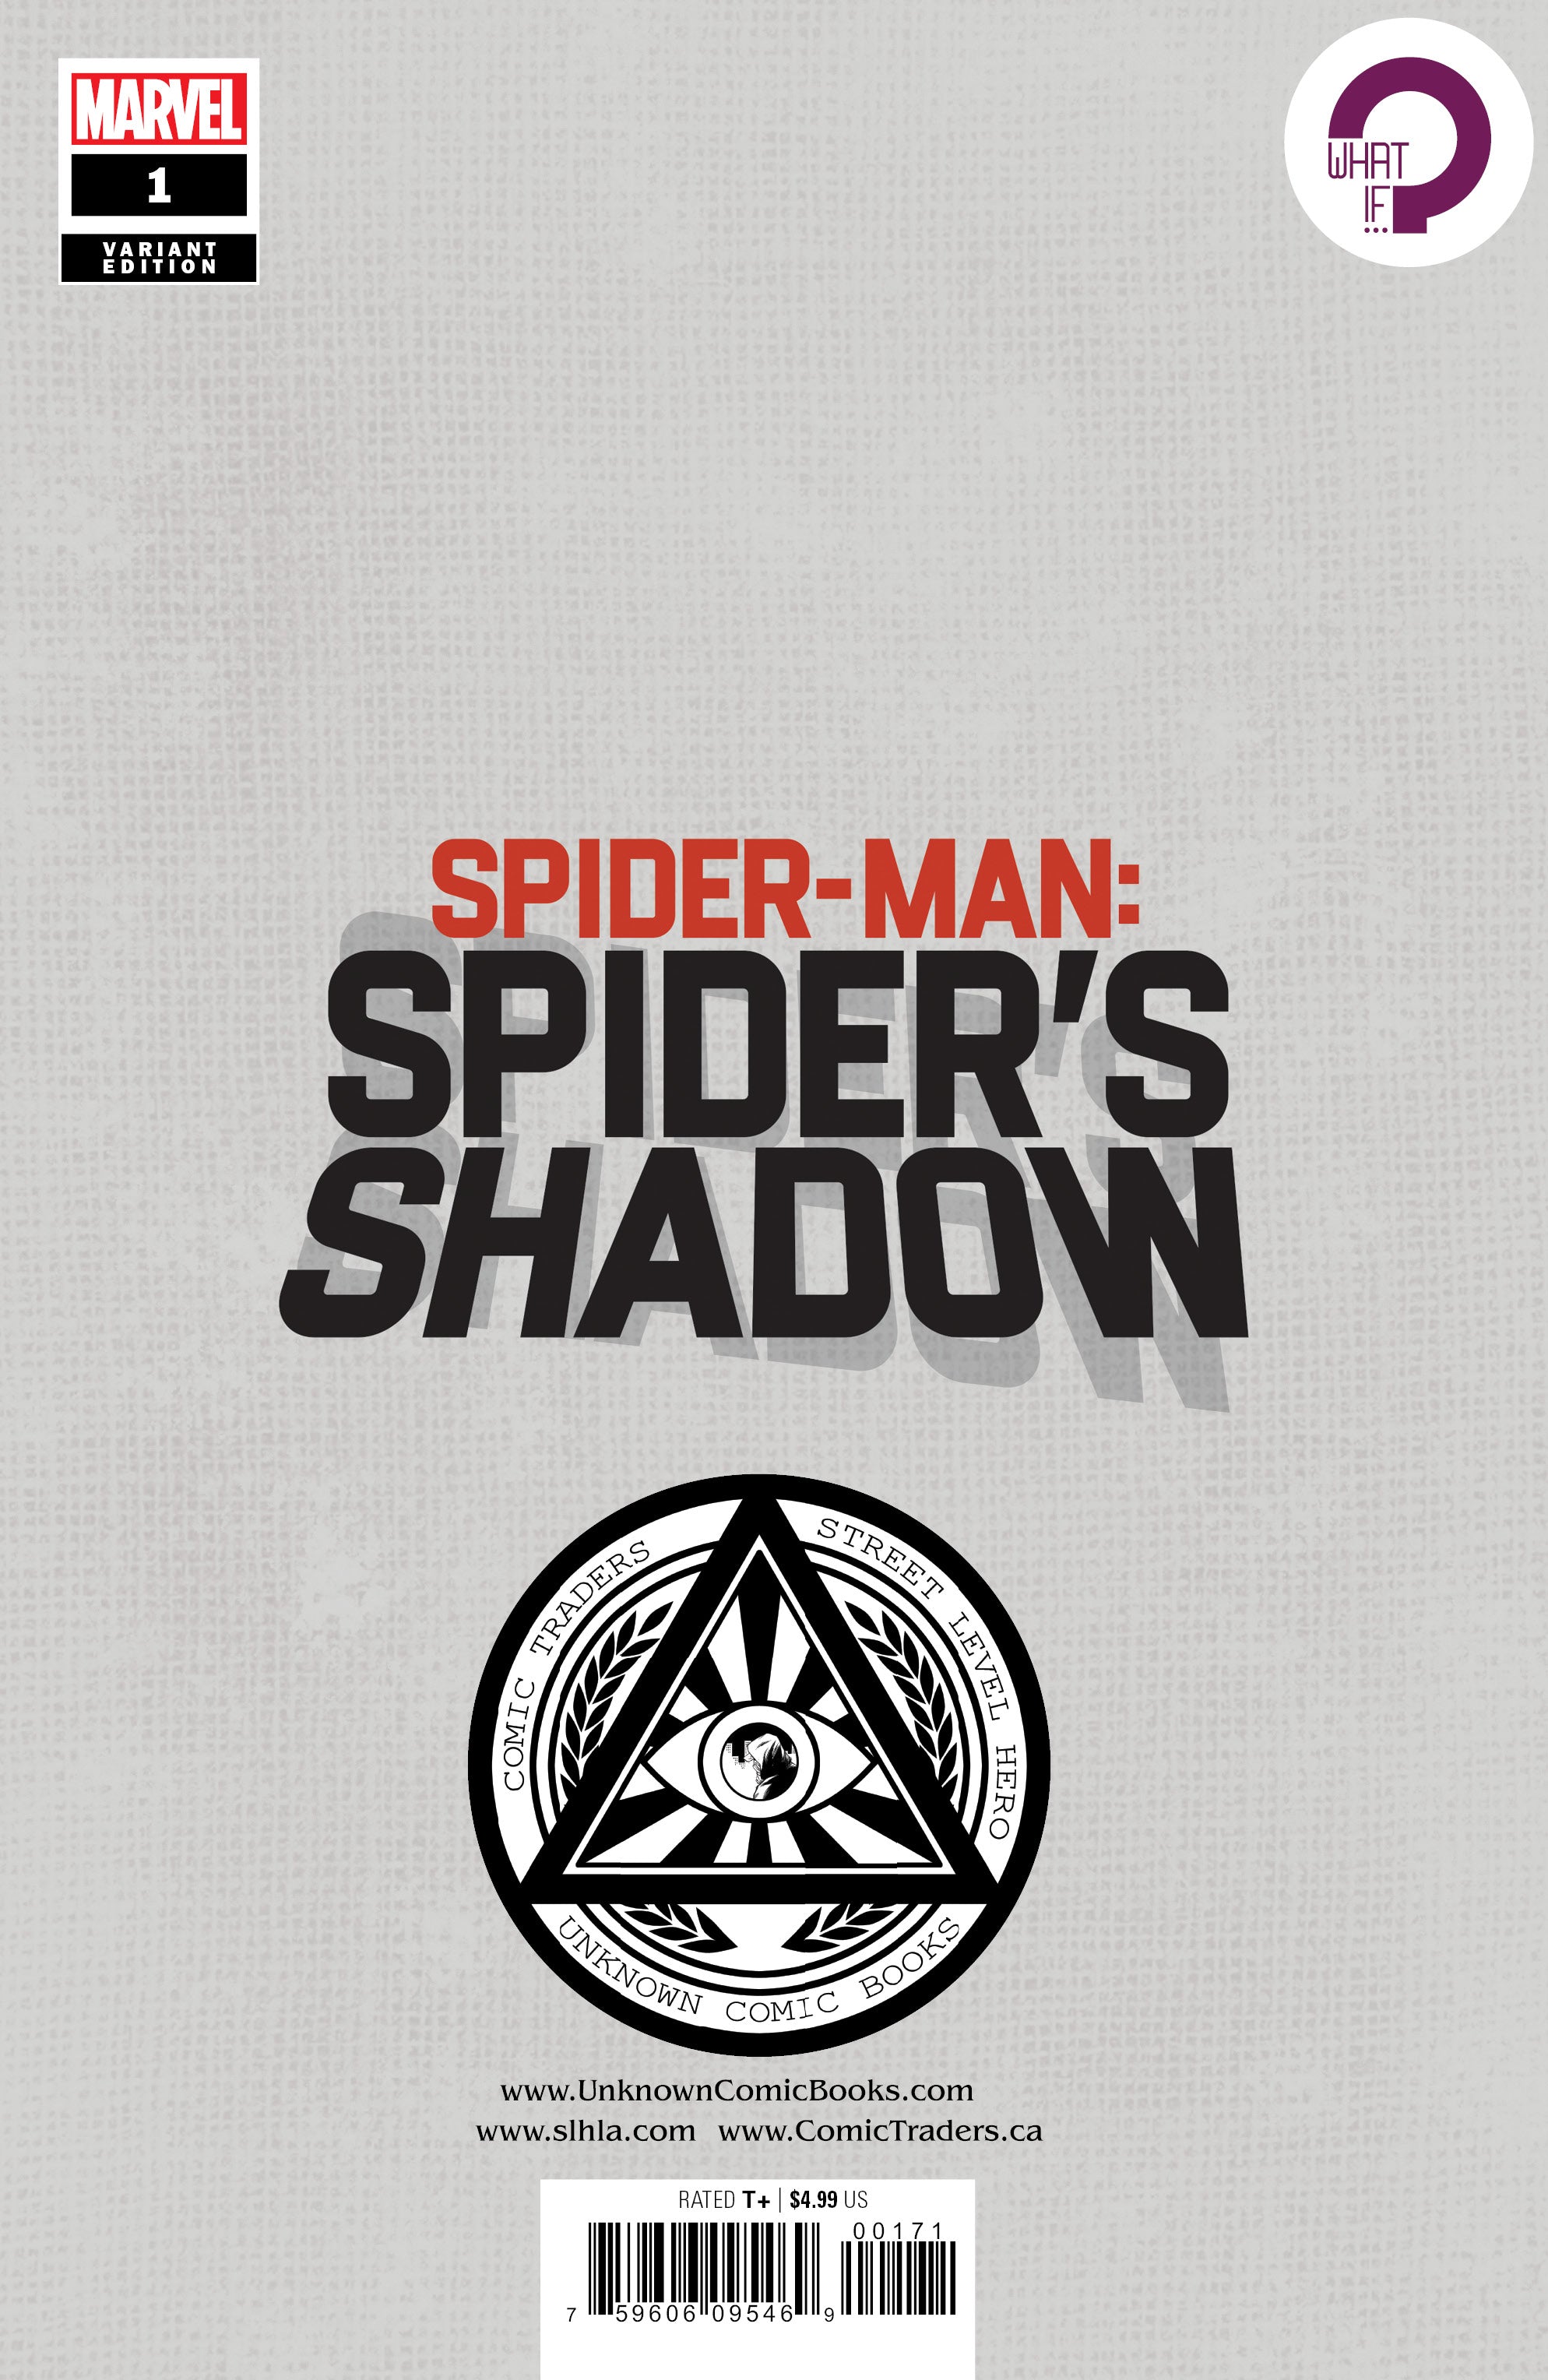 SPIDER-MAN SPIDERS SHADOW #1 (OF 4) UNKNOWN COMICS MIGUEL MERCADO EXCLUSIVE VAR (04/14/2021)